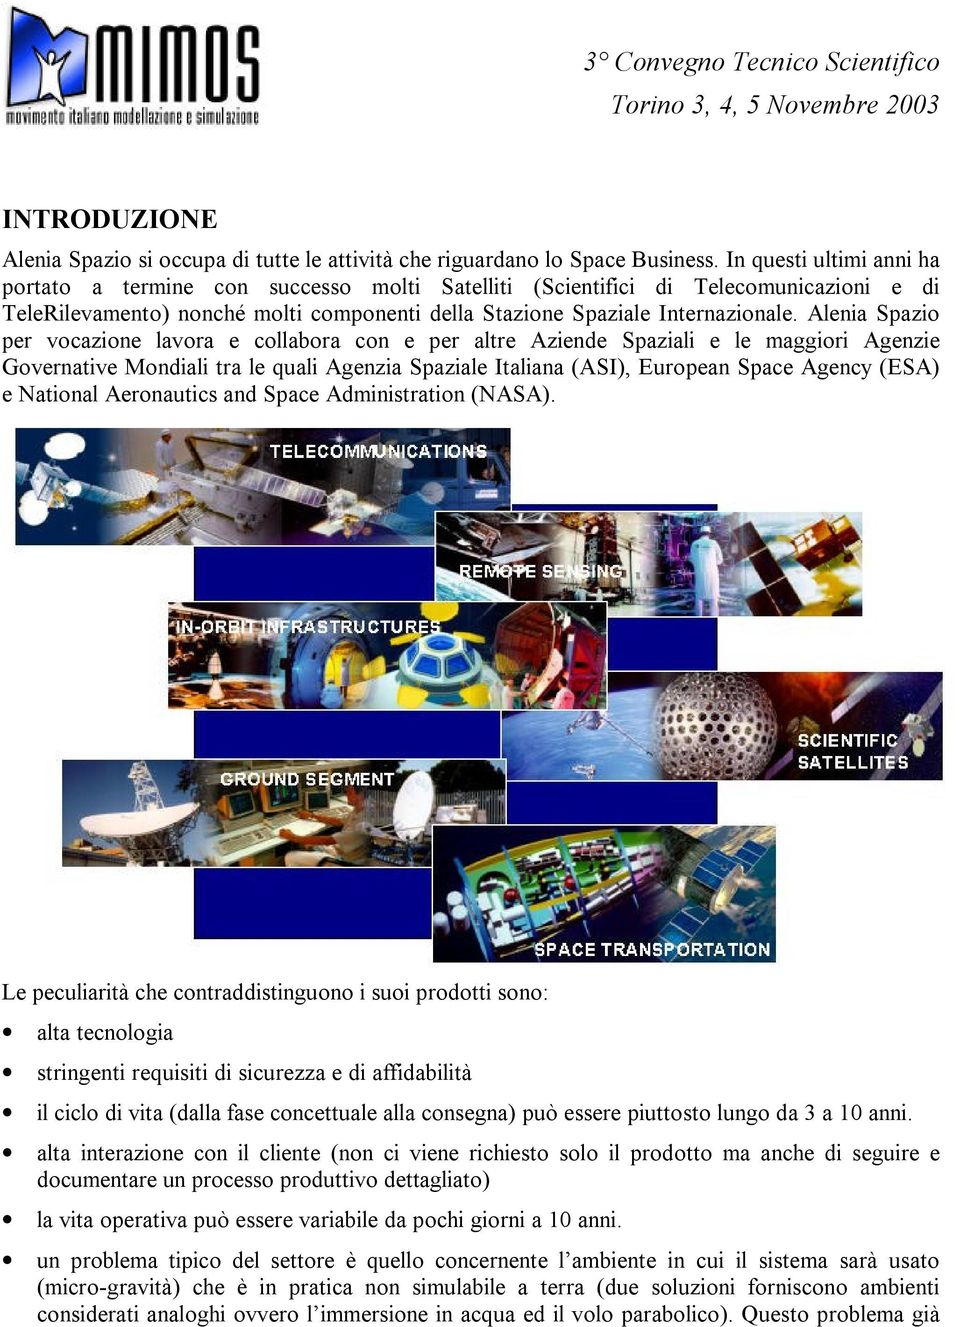 Alenia Spazio per vocazione lavora e collabora con e per altre Aziende Spaziali e le maggiori Agenzie Governative Mondiali tra le quali Agenzia Spaziale Italiana (ASI), European Space Agency (ESA) e